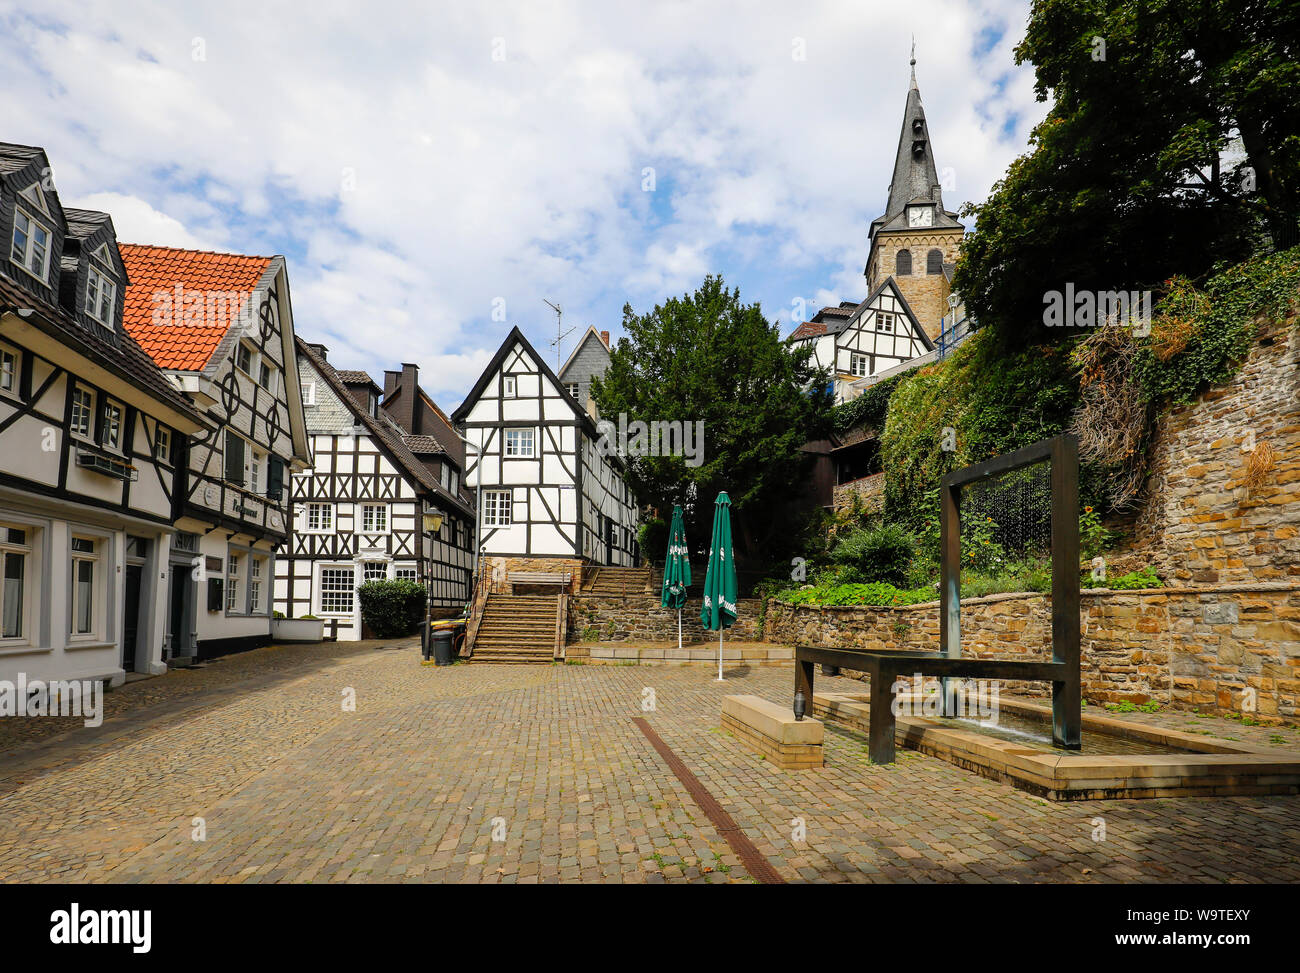 Essen, Ruhrgebiet, Nordrhein-Westfalen, Deutschland - Kettwig, die ehemalige unabhängige Weber Stadt hat eine Essener Stadtteil Seit 1975 ist die Altstadt. Stockfoto